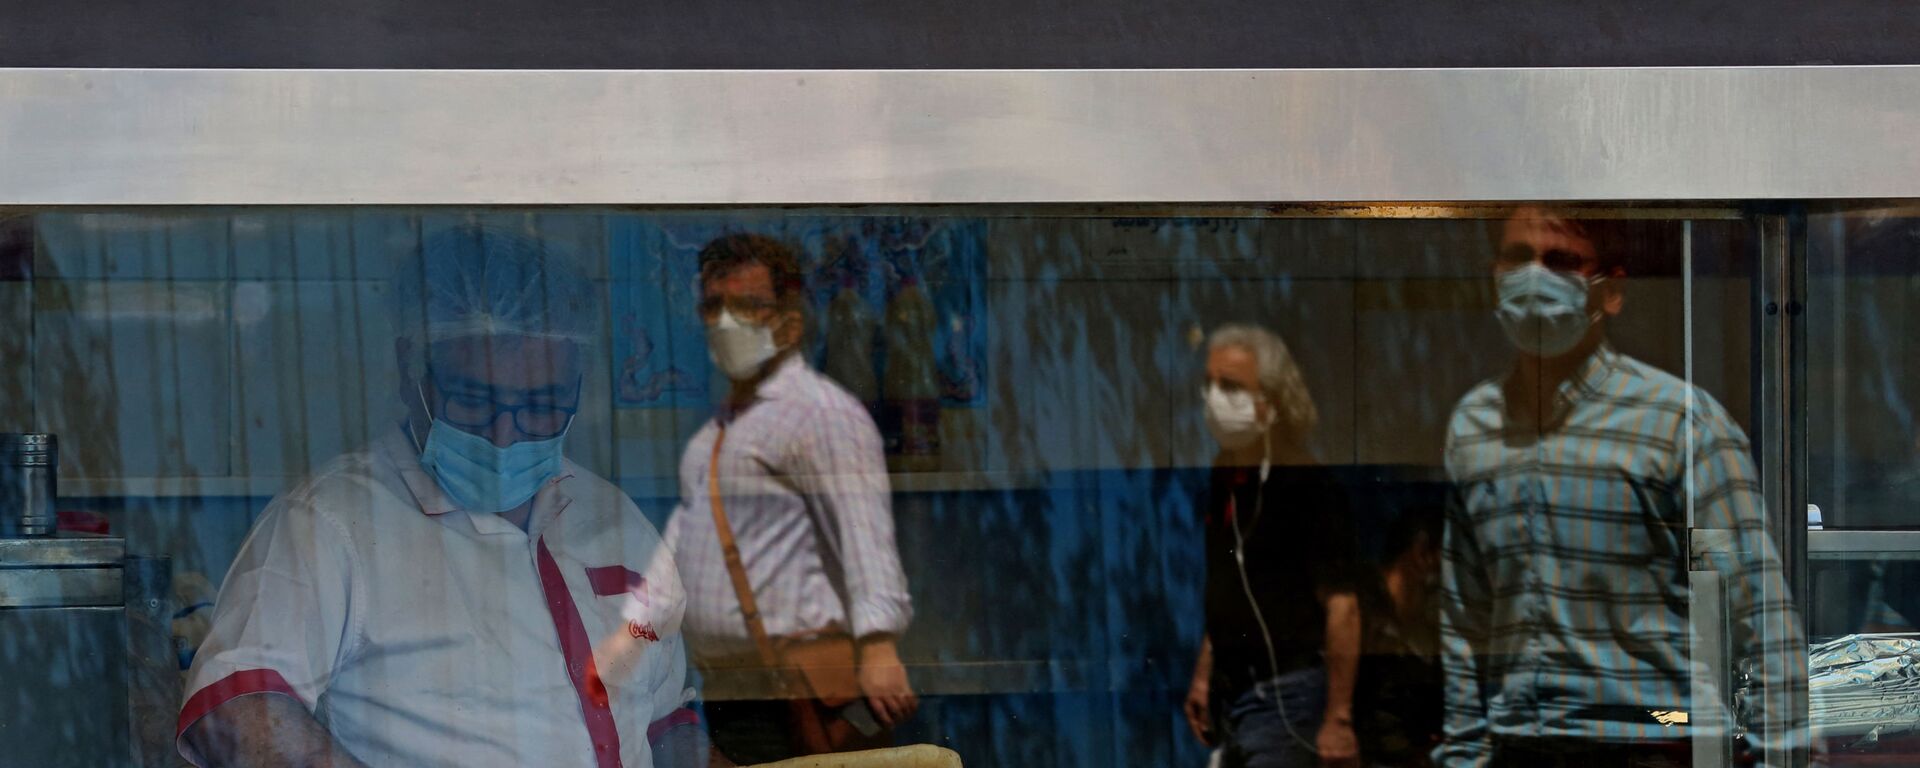 Люди напротив ресторана во время ужесточения направленных на борьбу с коронавирусом мер в Тегеране  - Sputnik Тоҷикистон, 1920, 14.04.2021